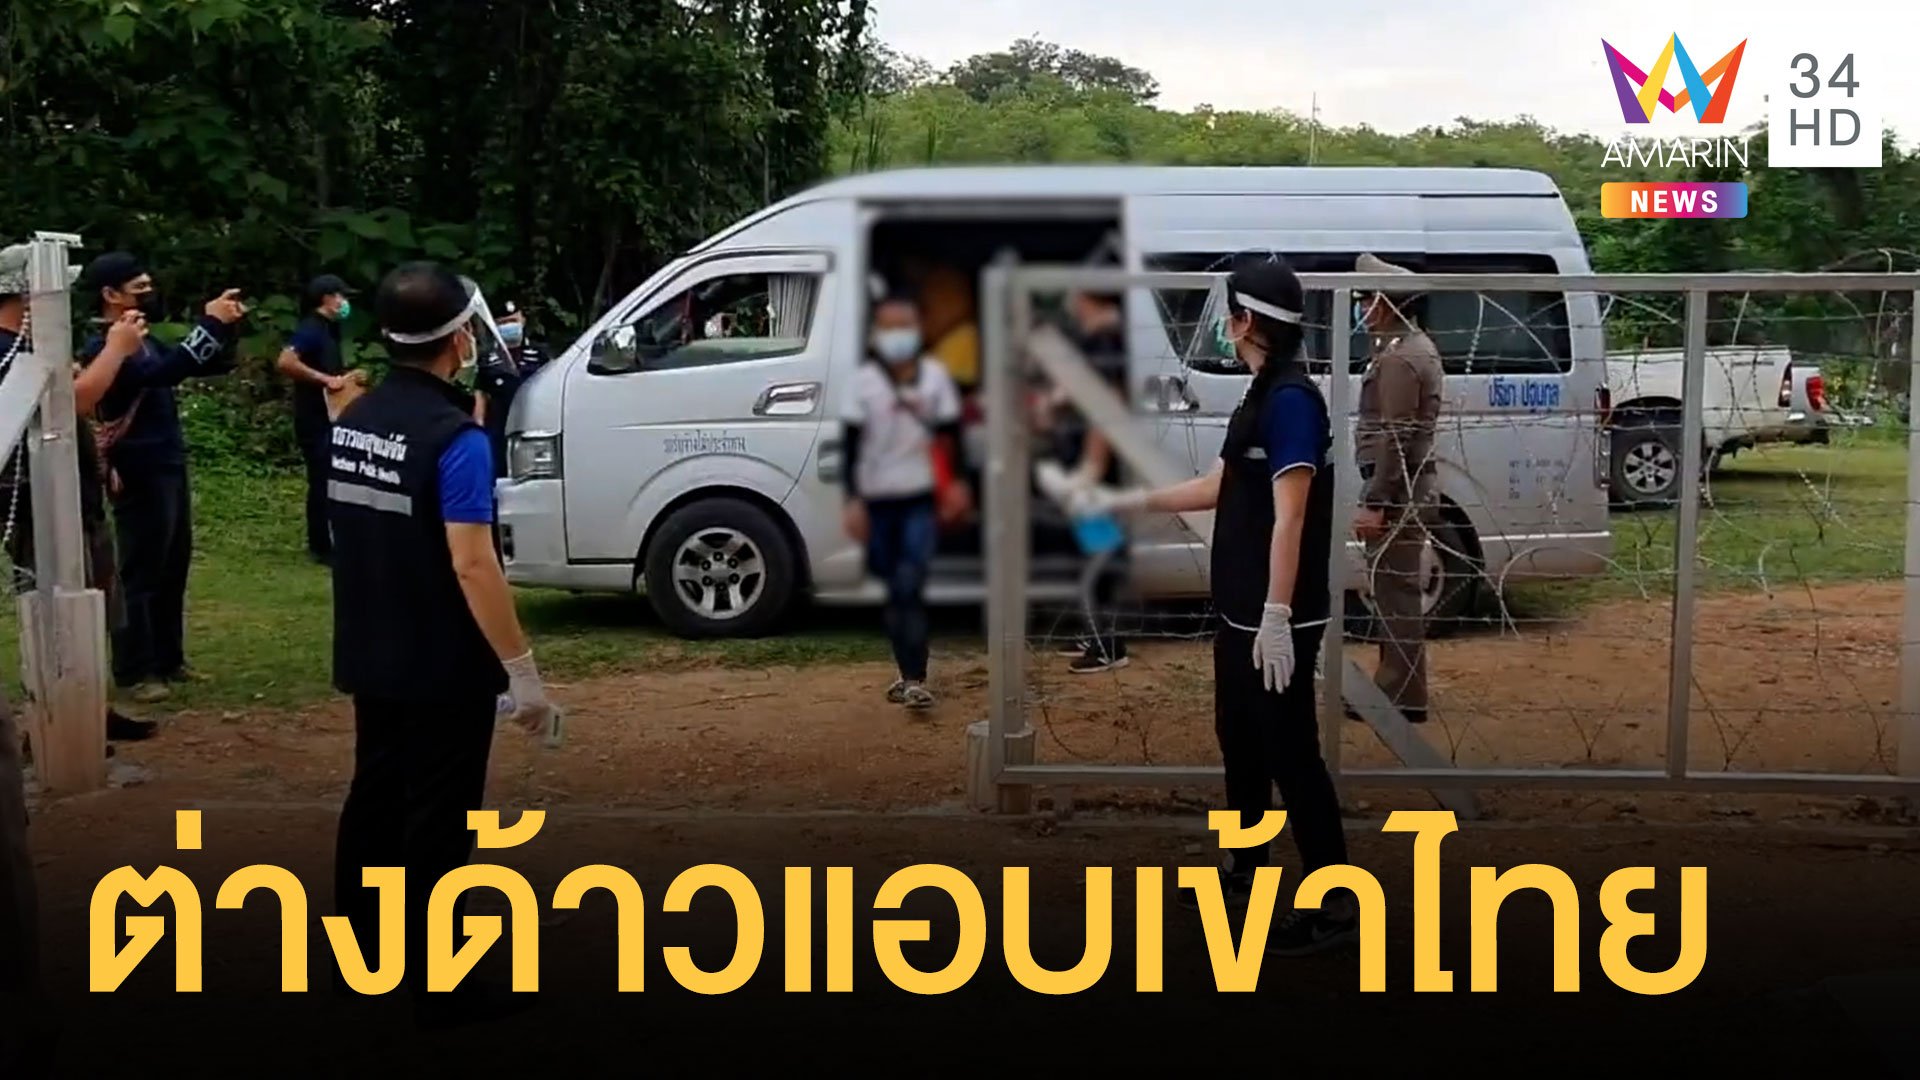 แรงงานพม่าลักลอบเข้าเมือง 42 คน อัดรถตู้แน่นเอี้ยด | ข่าวอรุณอมรินทร์ | 23 พ.ค. 64 | AMARIN TVHD34